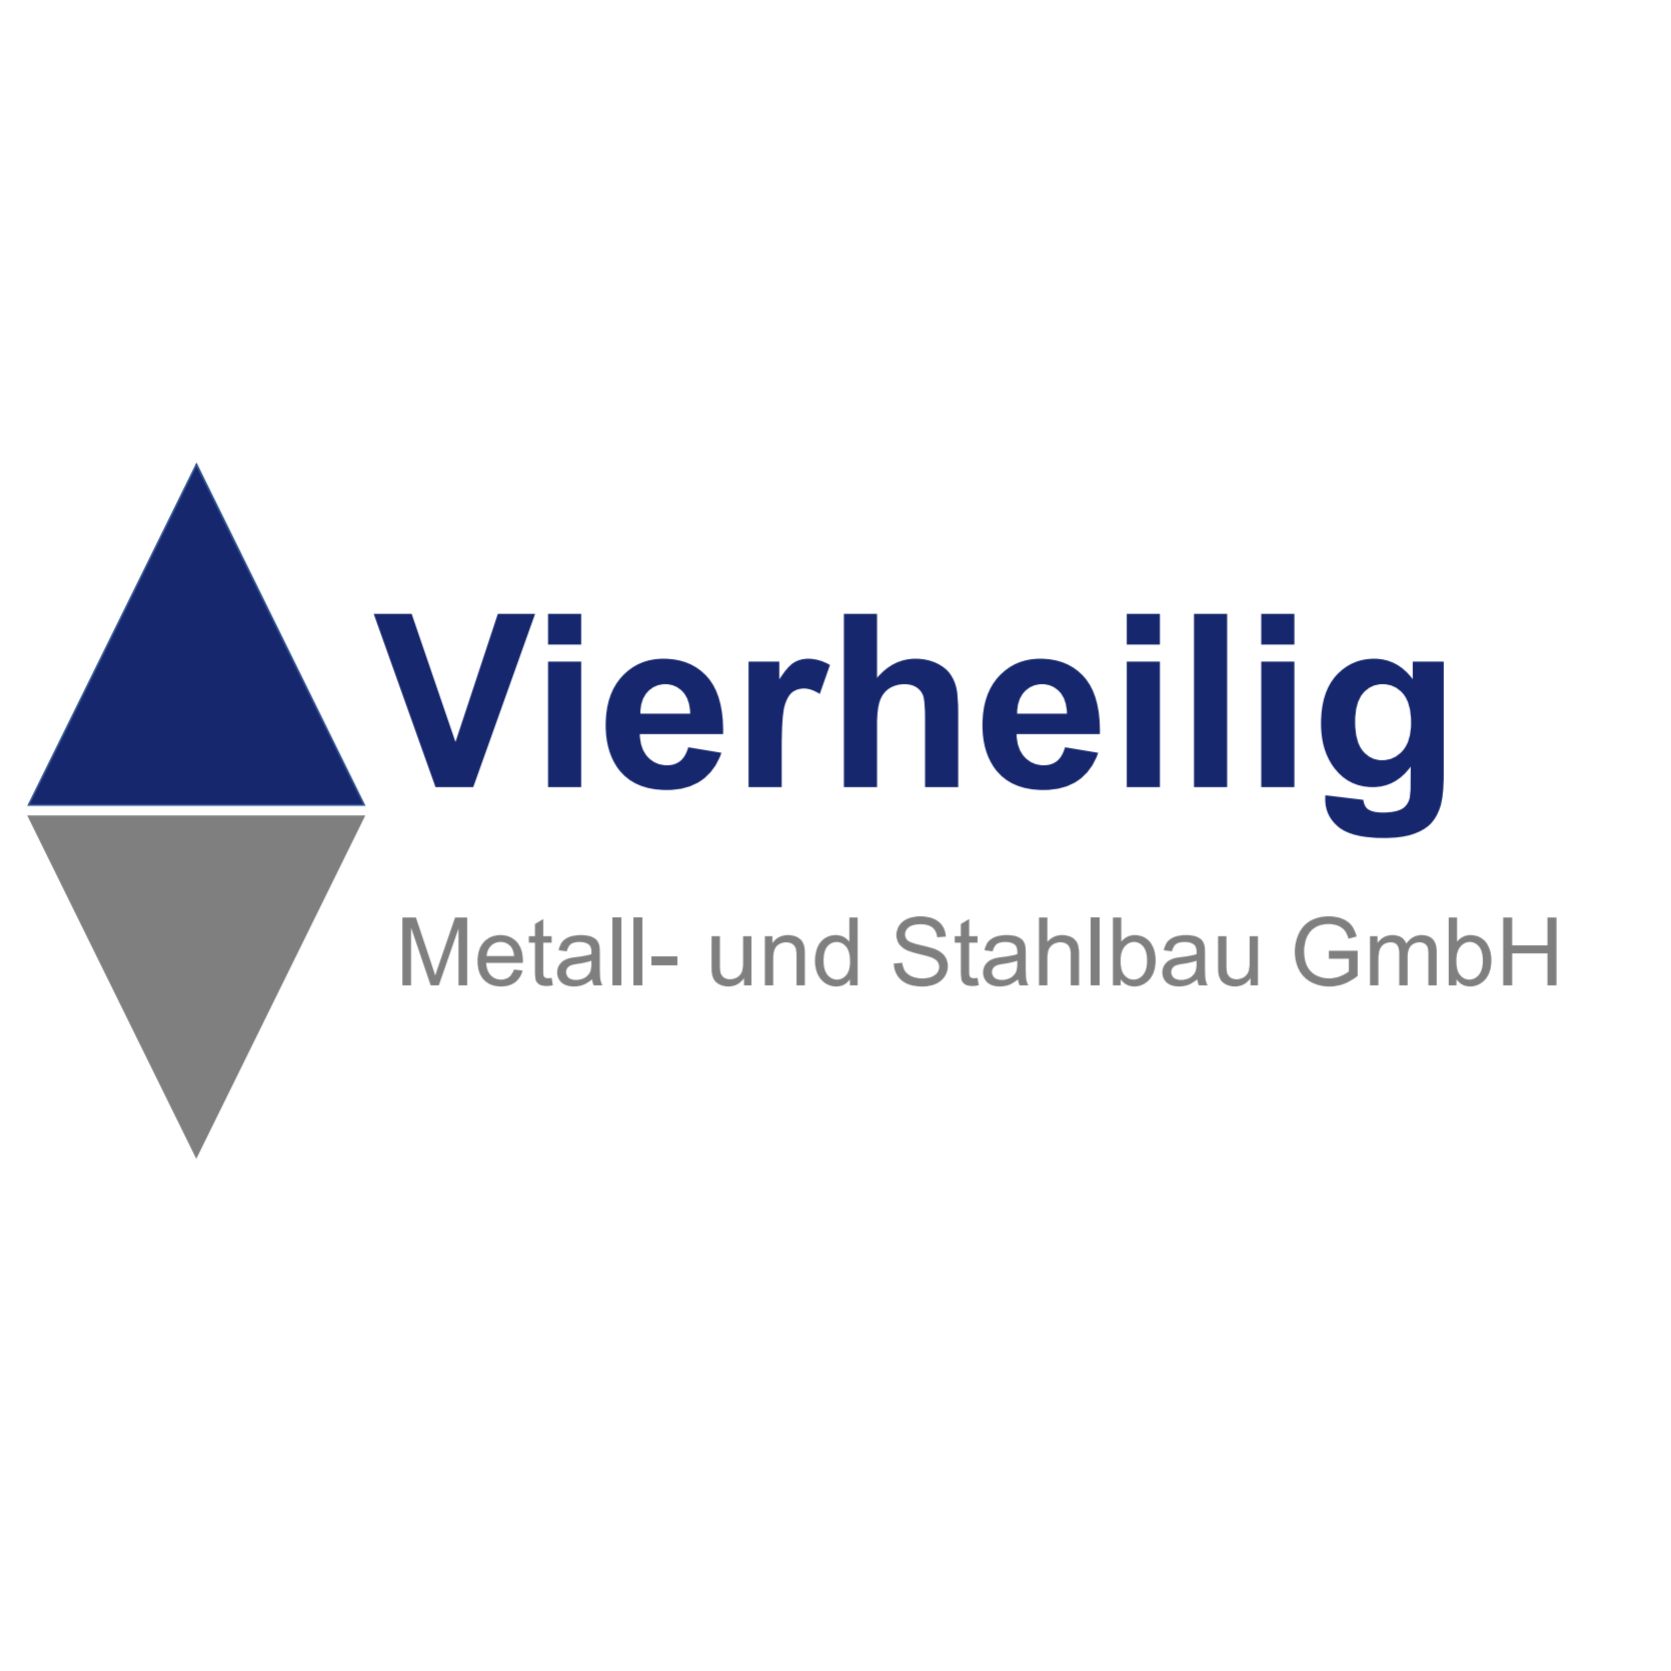 Vierheilig Metall- und Stahlbau GmbH in Fuchsstadt - Logo